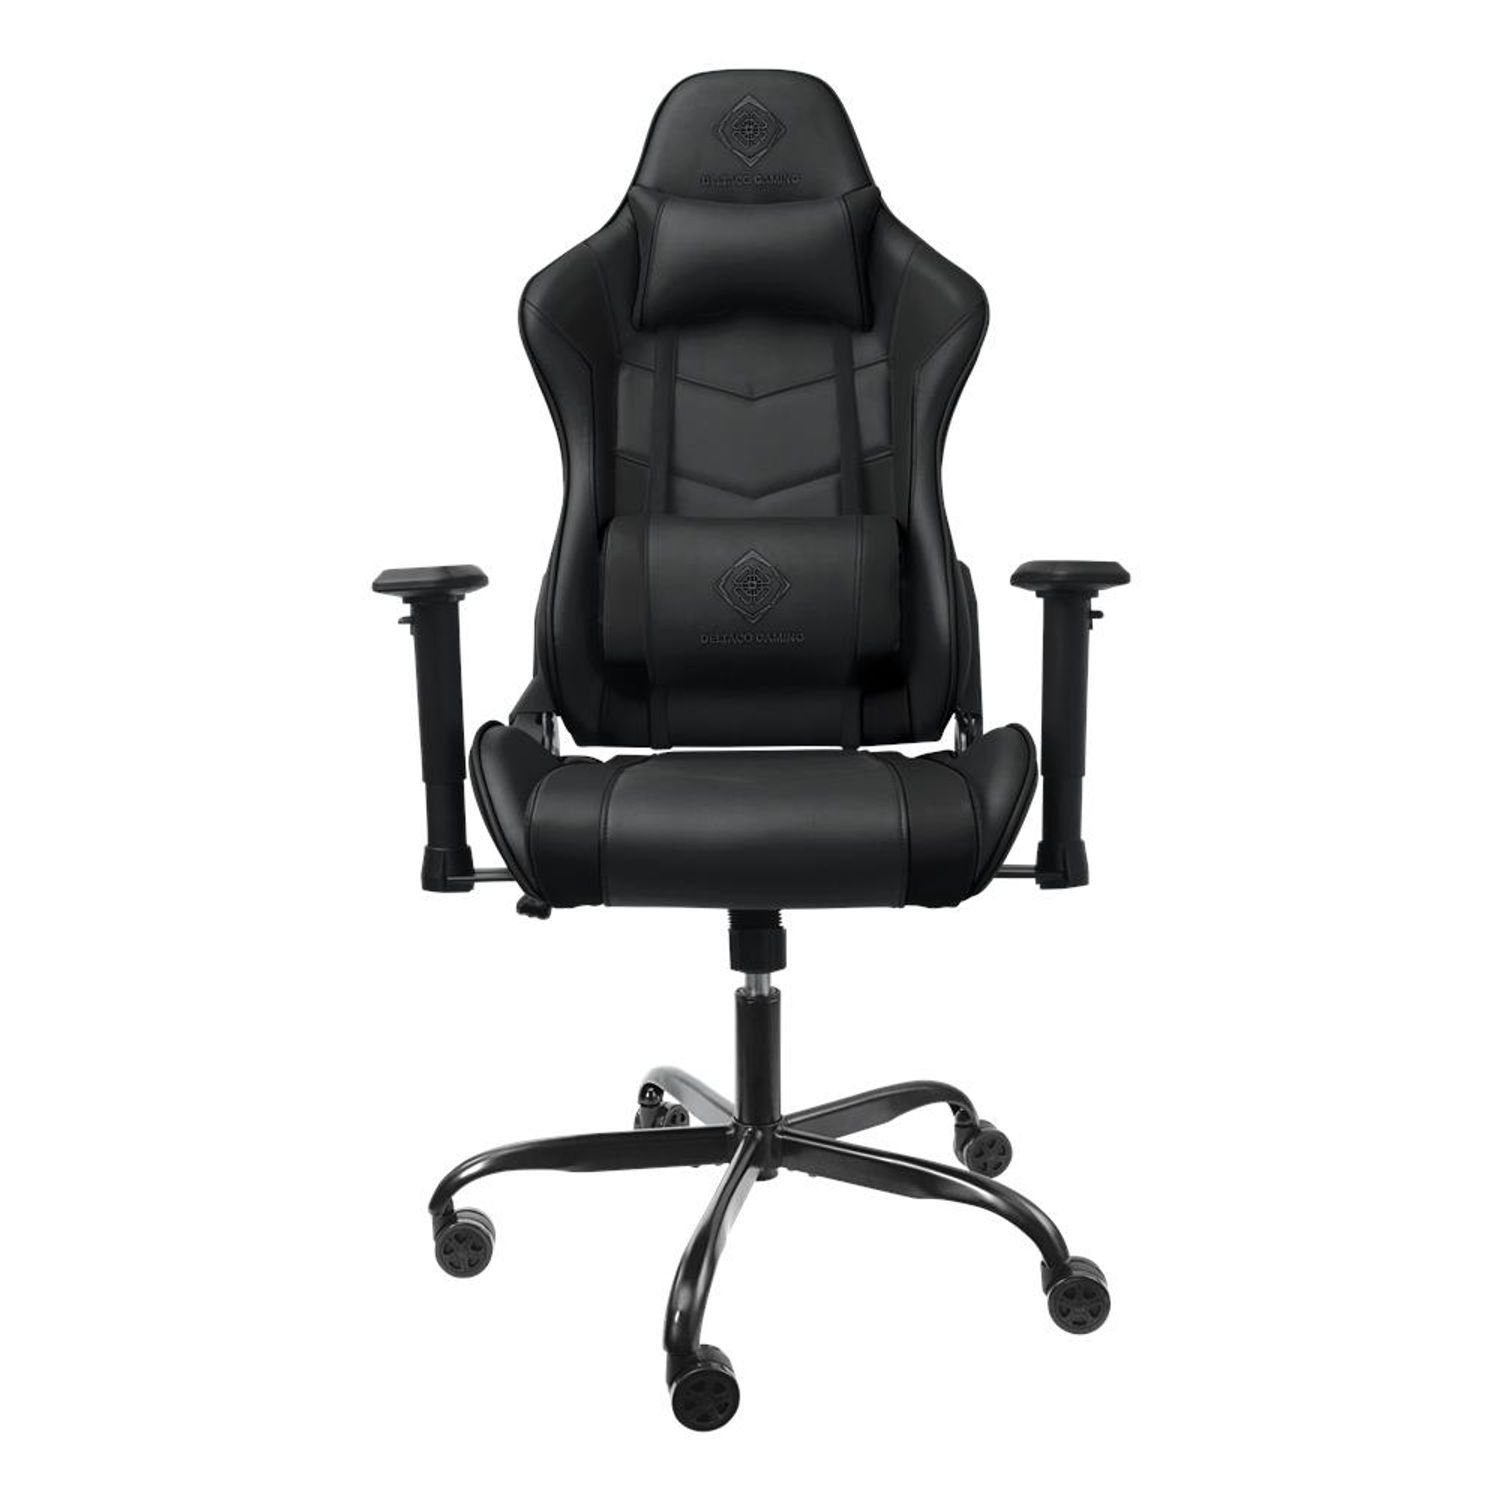 DELTACO Gaming-Stuhl Gaming Stuhl Jumbo Gamer Stuhl Kissen 110kg (kein Set), schw., extra groß, hohe Rückenlehne, inkl. 5 Jahre Herstellergarantie schwarz